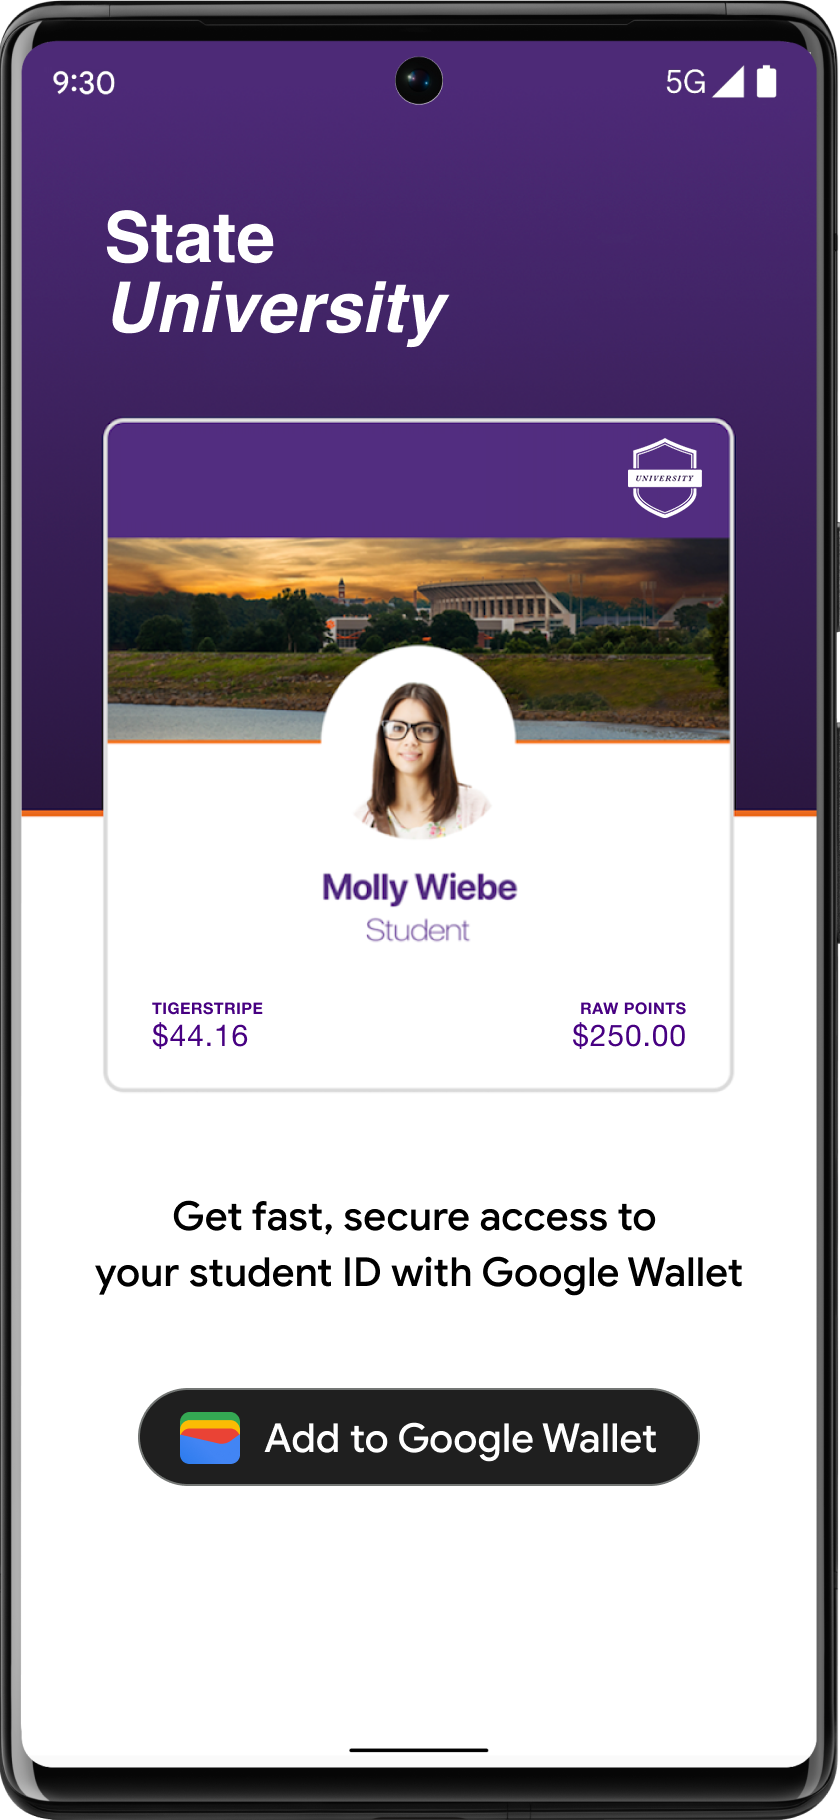 לחצן הוספה ל-Google Wallet שממוקם בצורה בולטת באפליקציית חשבון הסטודנט.